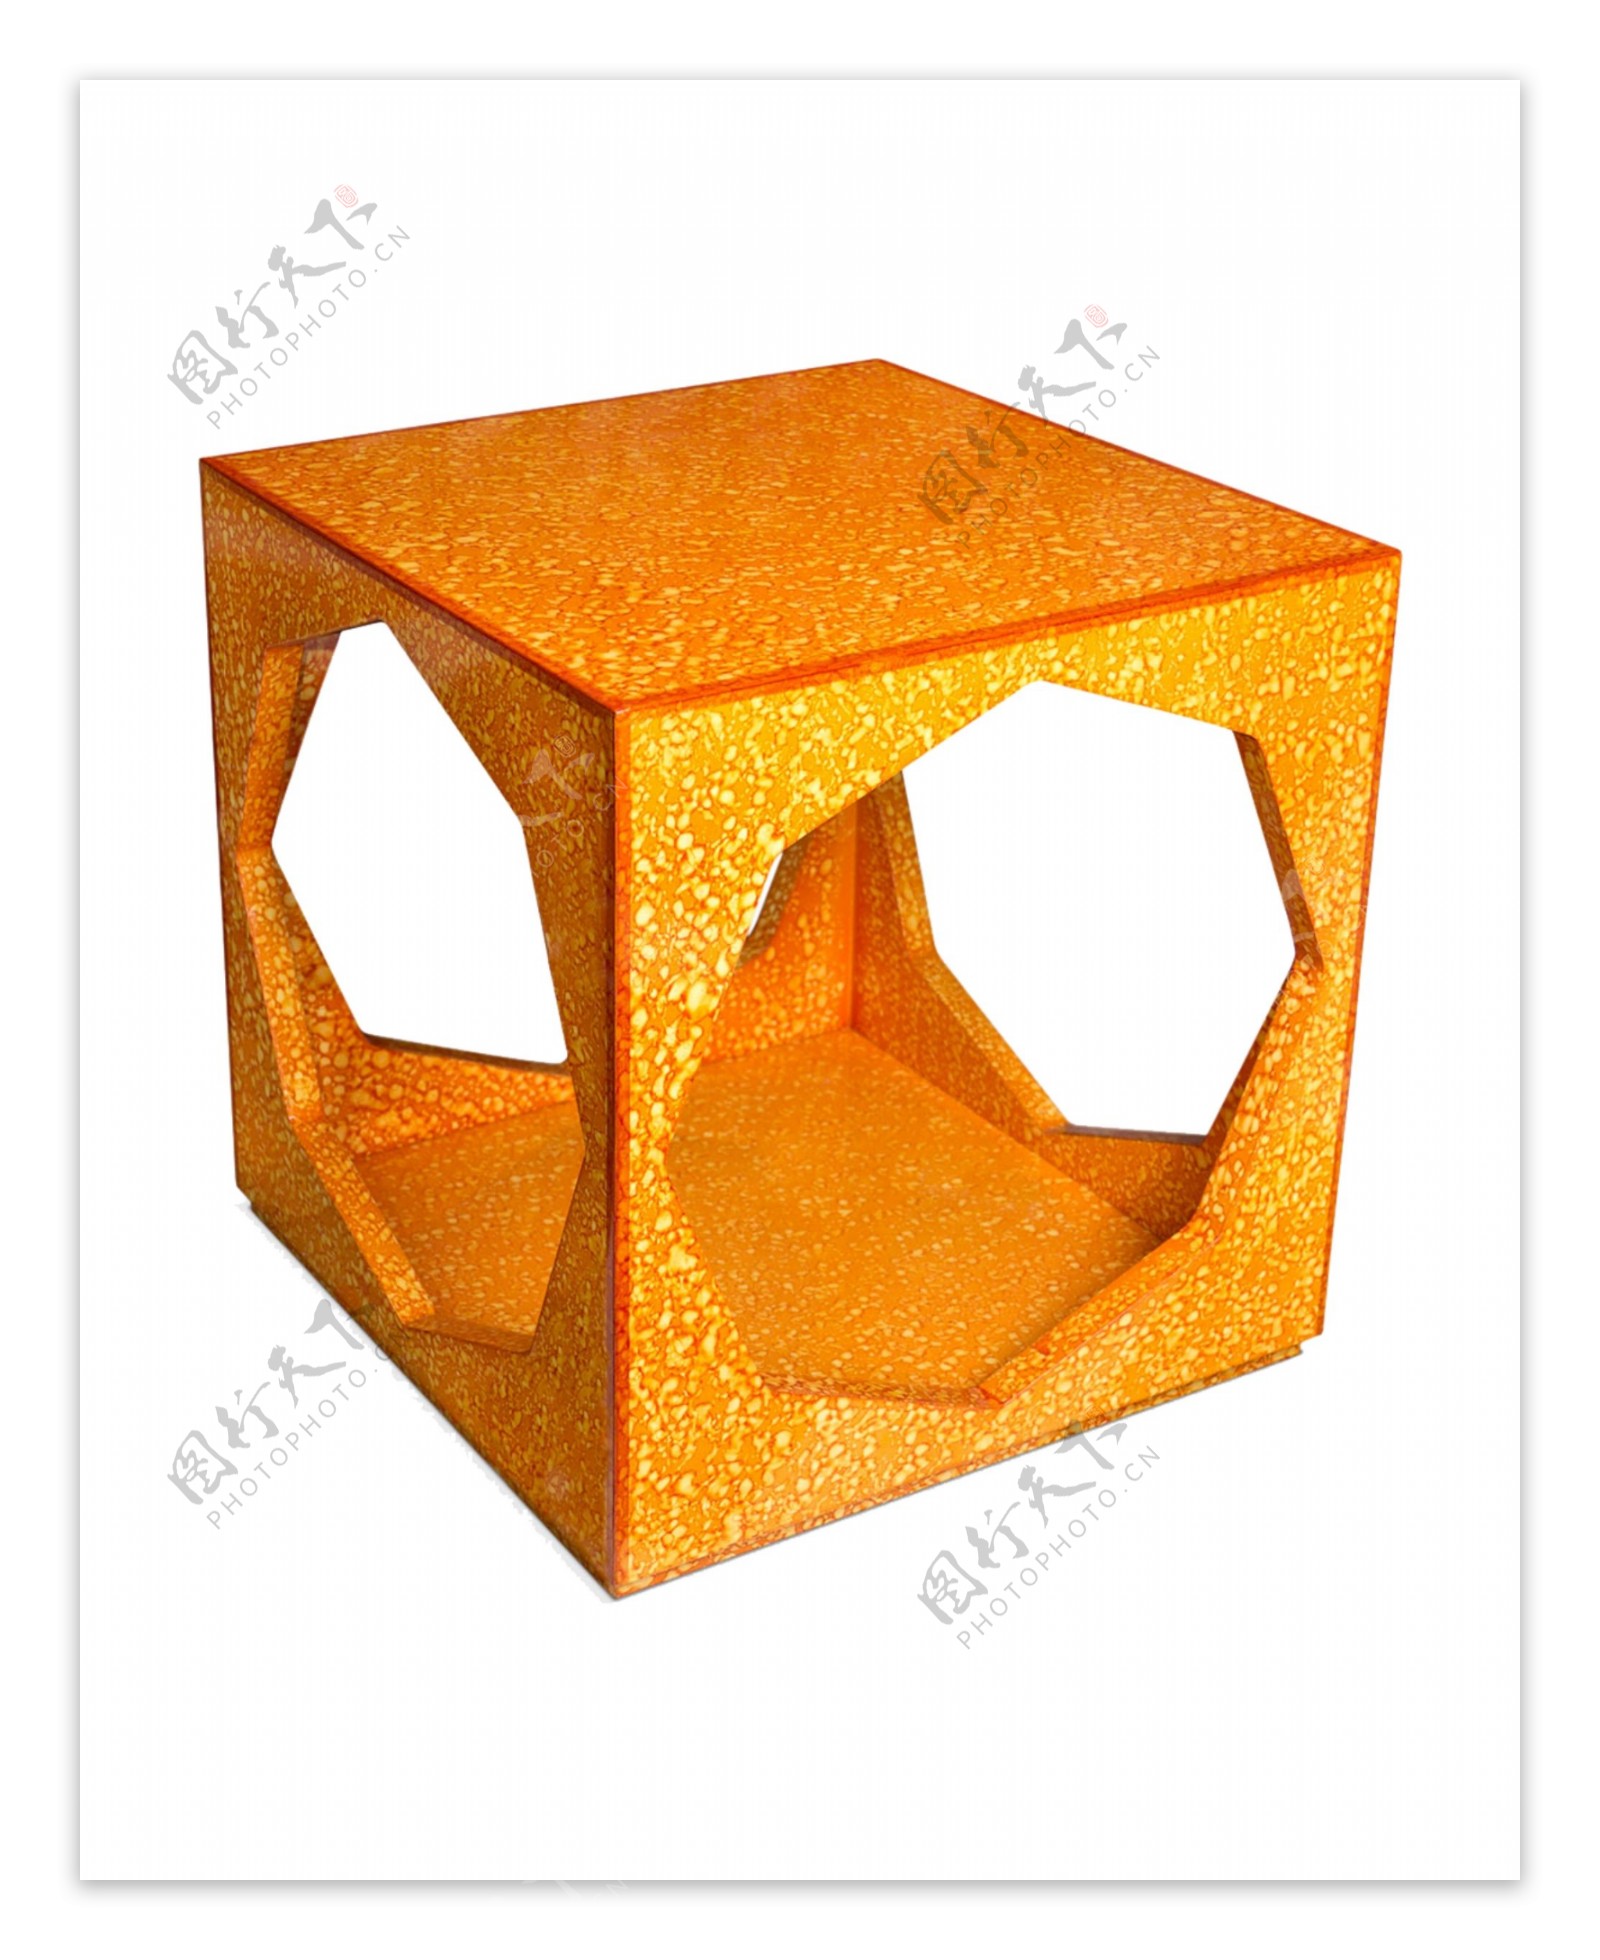 橙色方形桌子设计